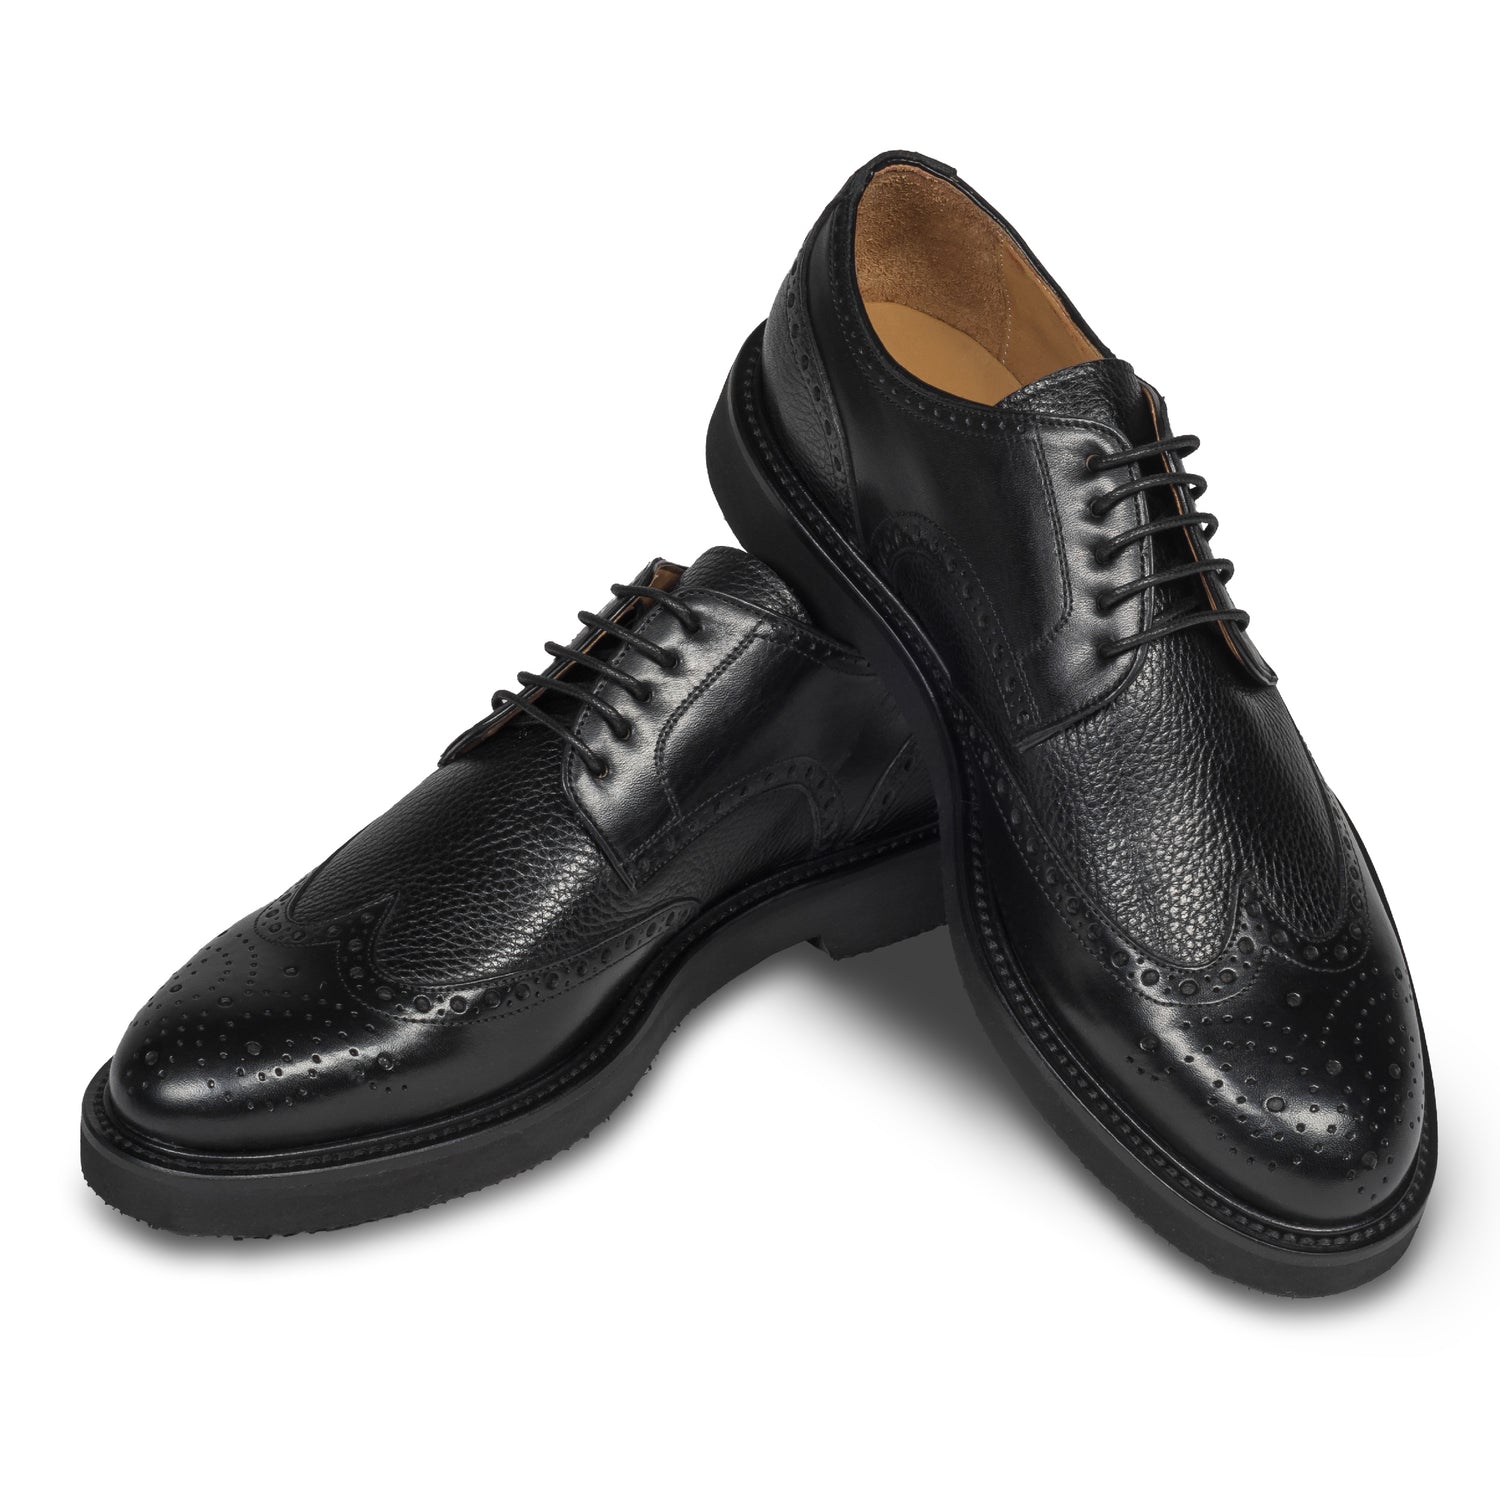 BRECOS – Italienischer Herren Schnür-Halbschuh im Budapester-Stil, schwarz, aus Kalbsleder mit ultraleichter Gummiprofilsohle. Handgefertigt und durchgenäht. Schuhe paarweise überkreuzt aufgestellt.